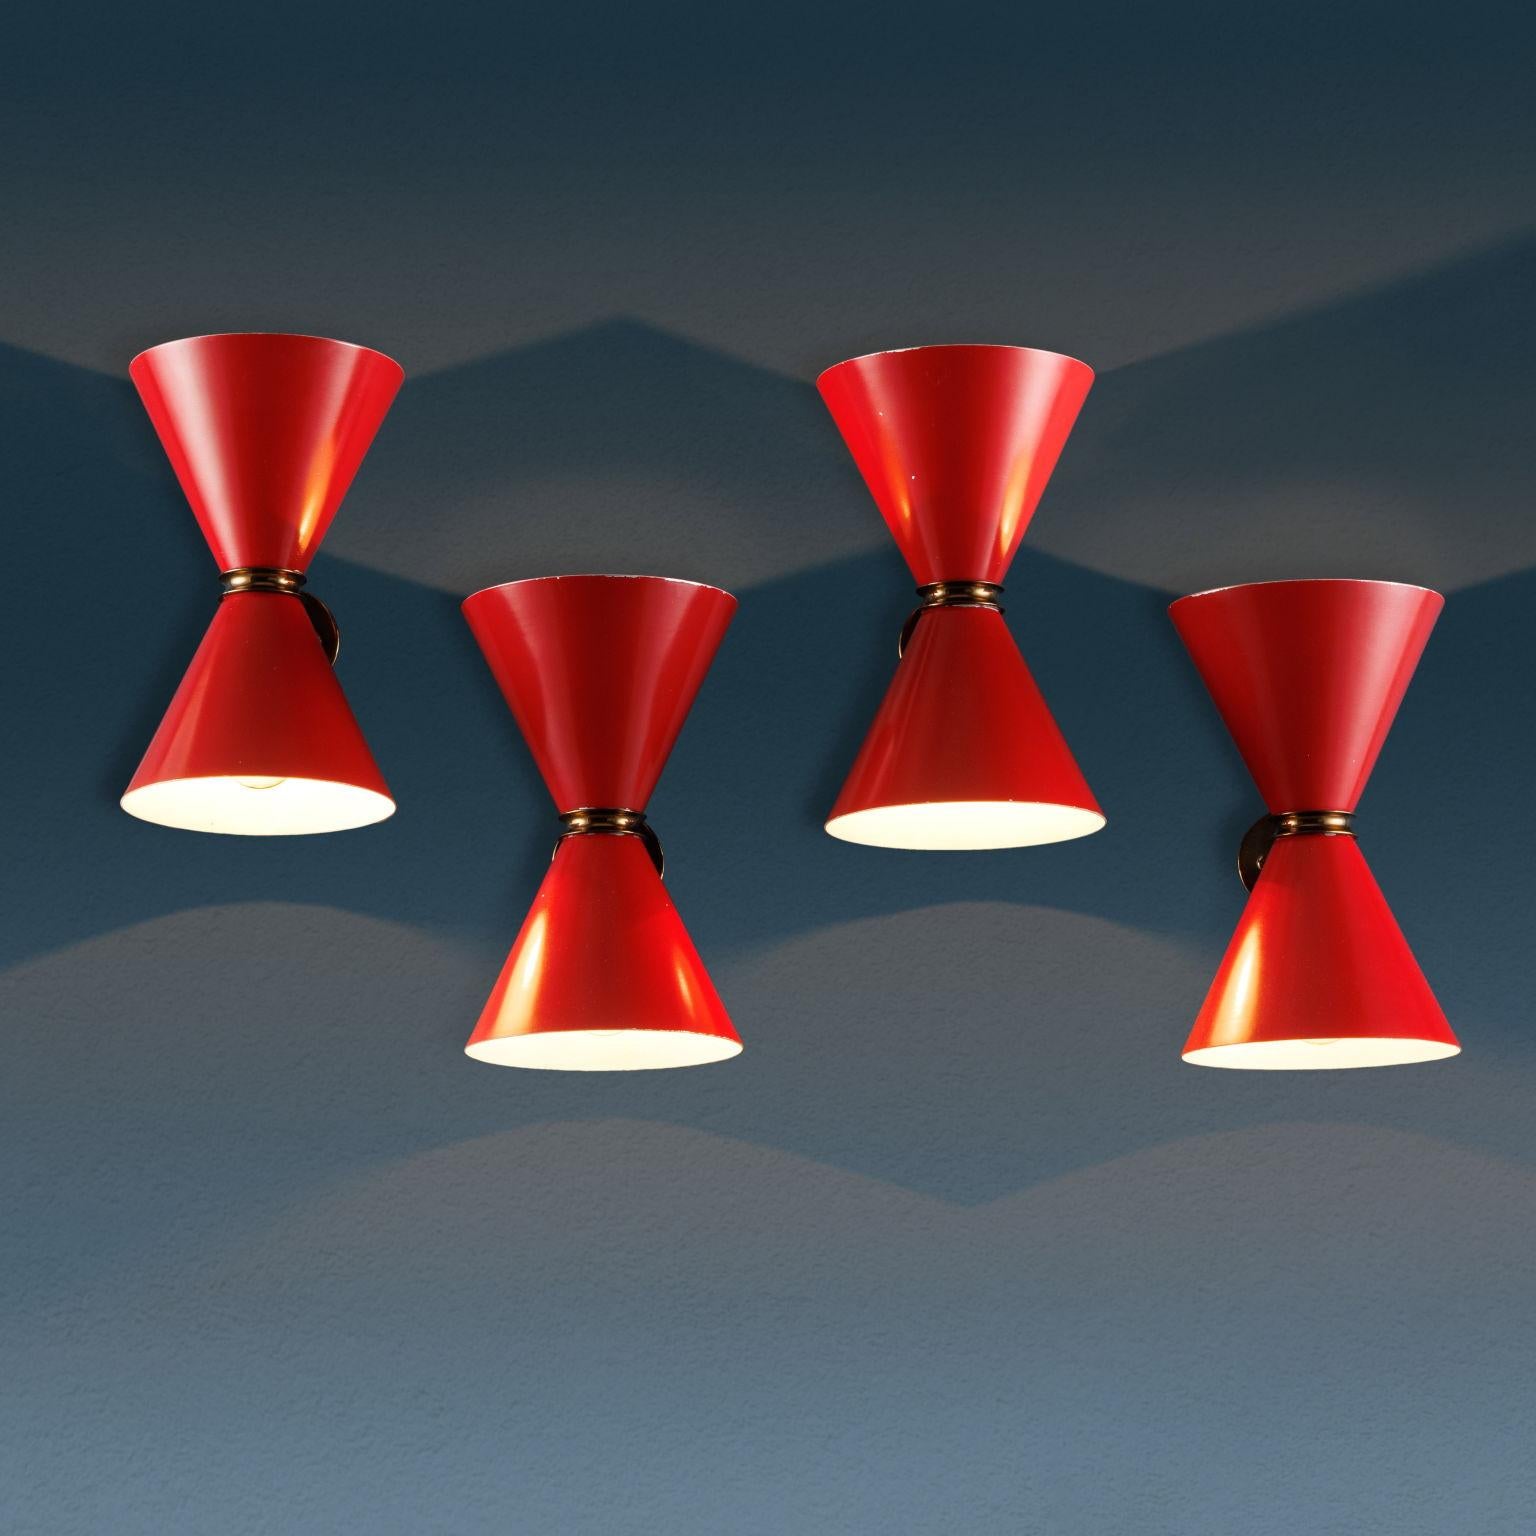 Wandlampen-Set aus Italien, bestehend aus einem Doppelkegel aus rot emailliertem Metall, Messingring und Ständer. 